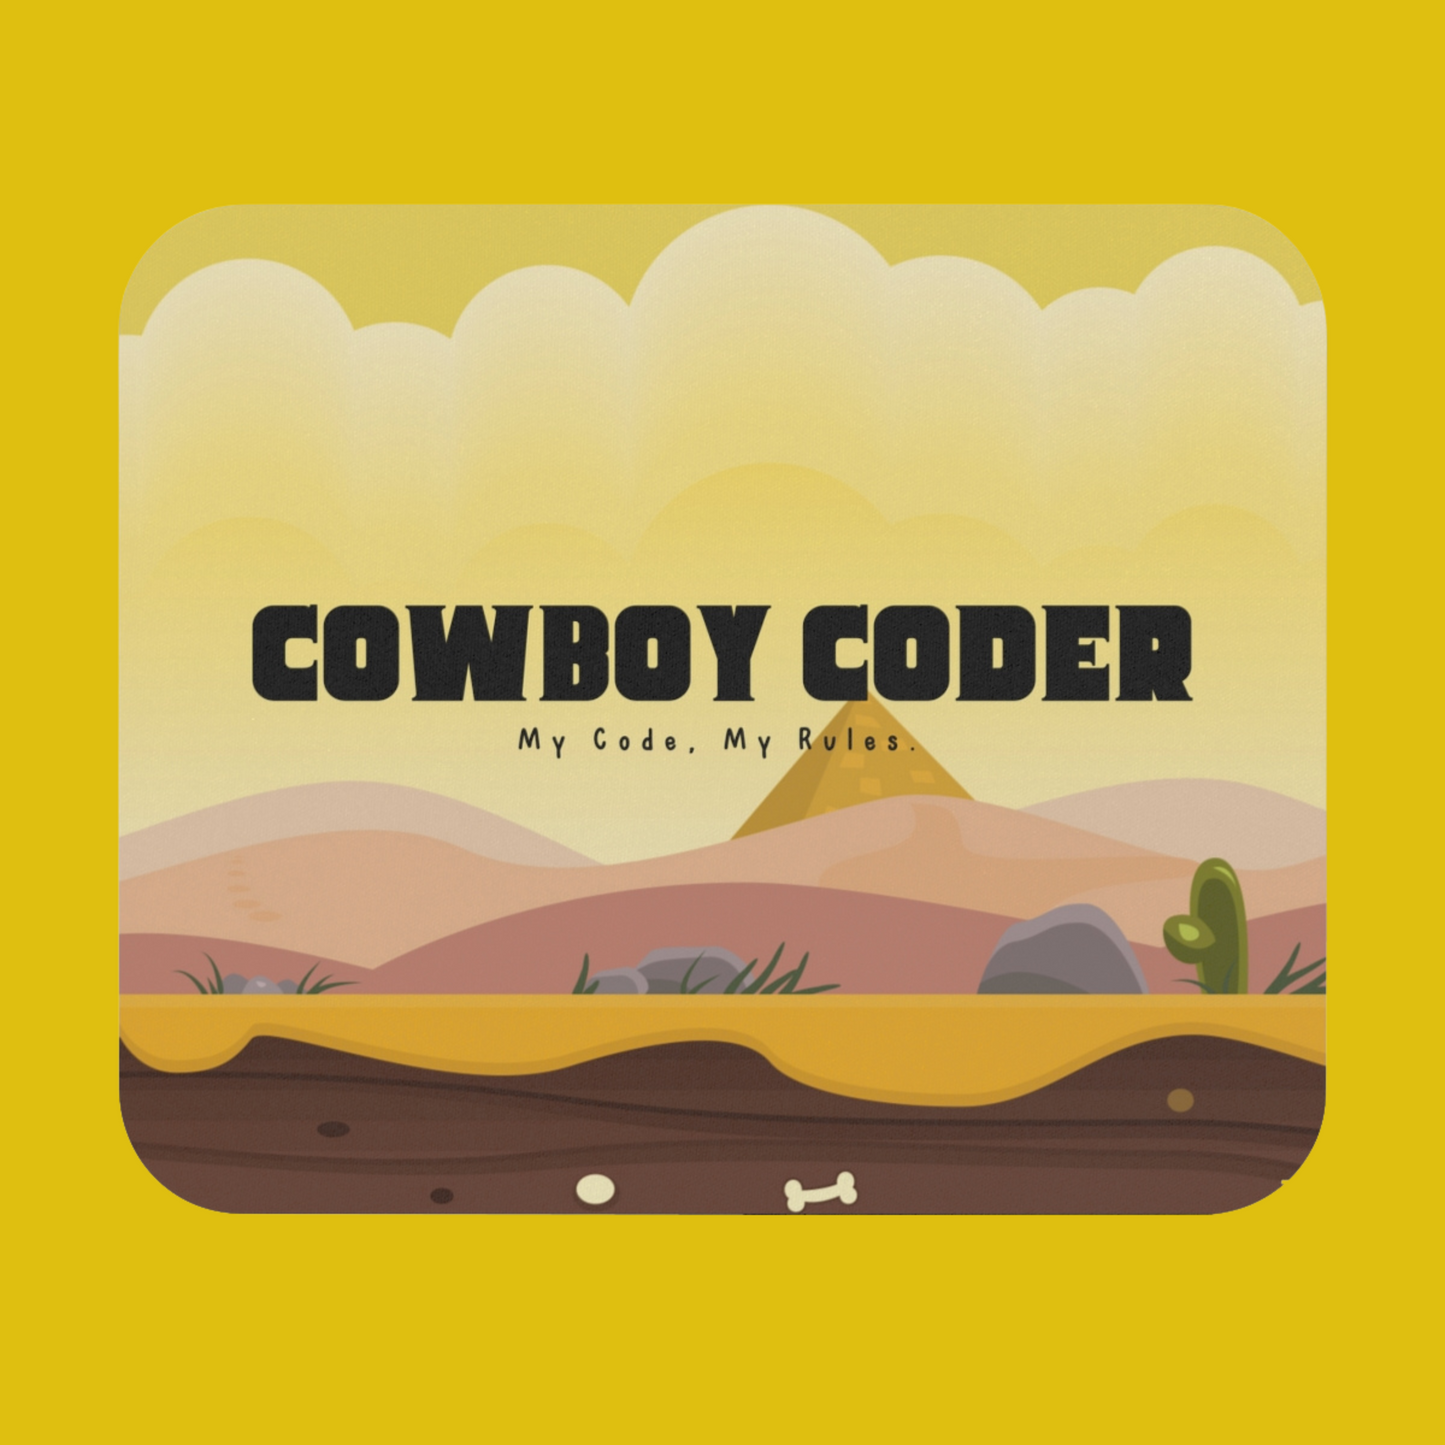 Cowboy Coder Mouse pad - Developer / Programmer / Coder / Software Engineer / DevOps